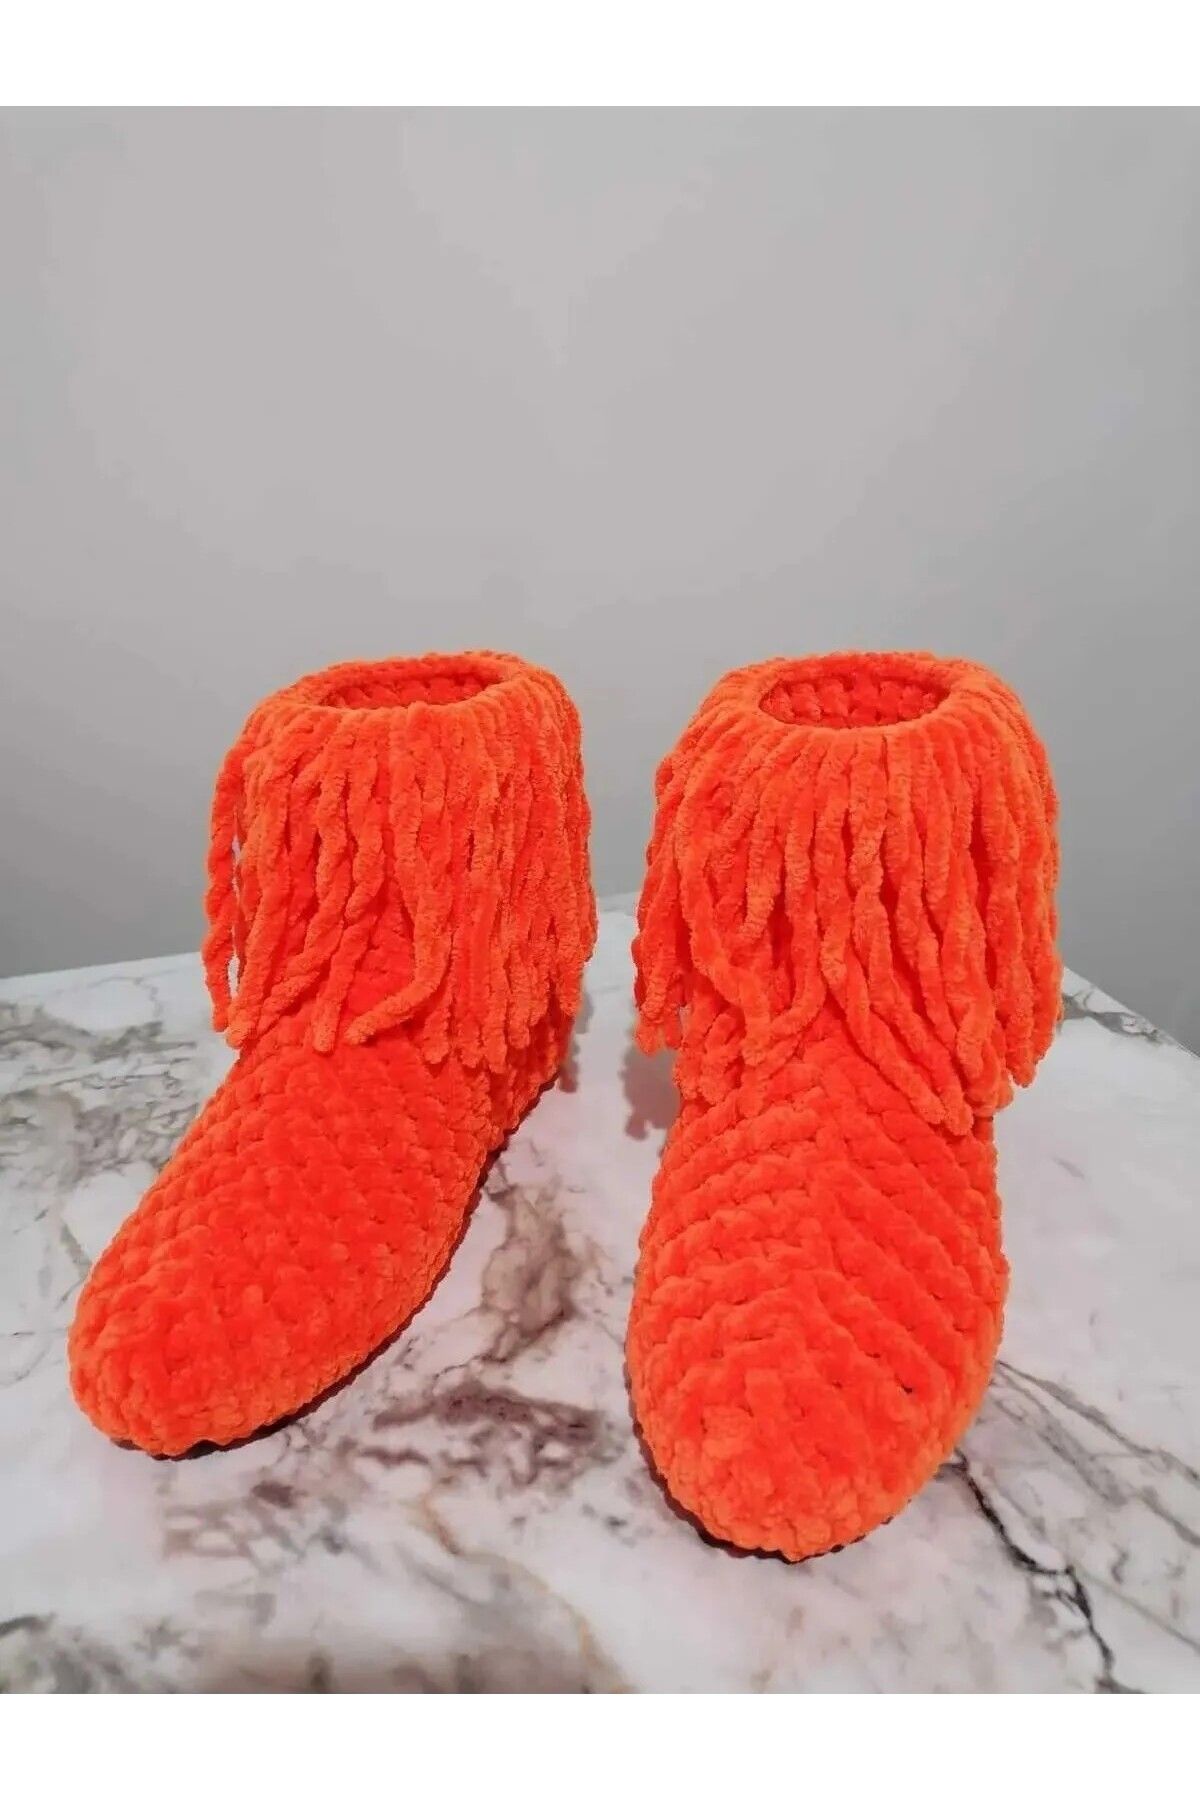 Merut style El örgüsü kadife ip turuncu püsküllü ev botu panduf